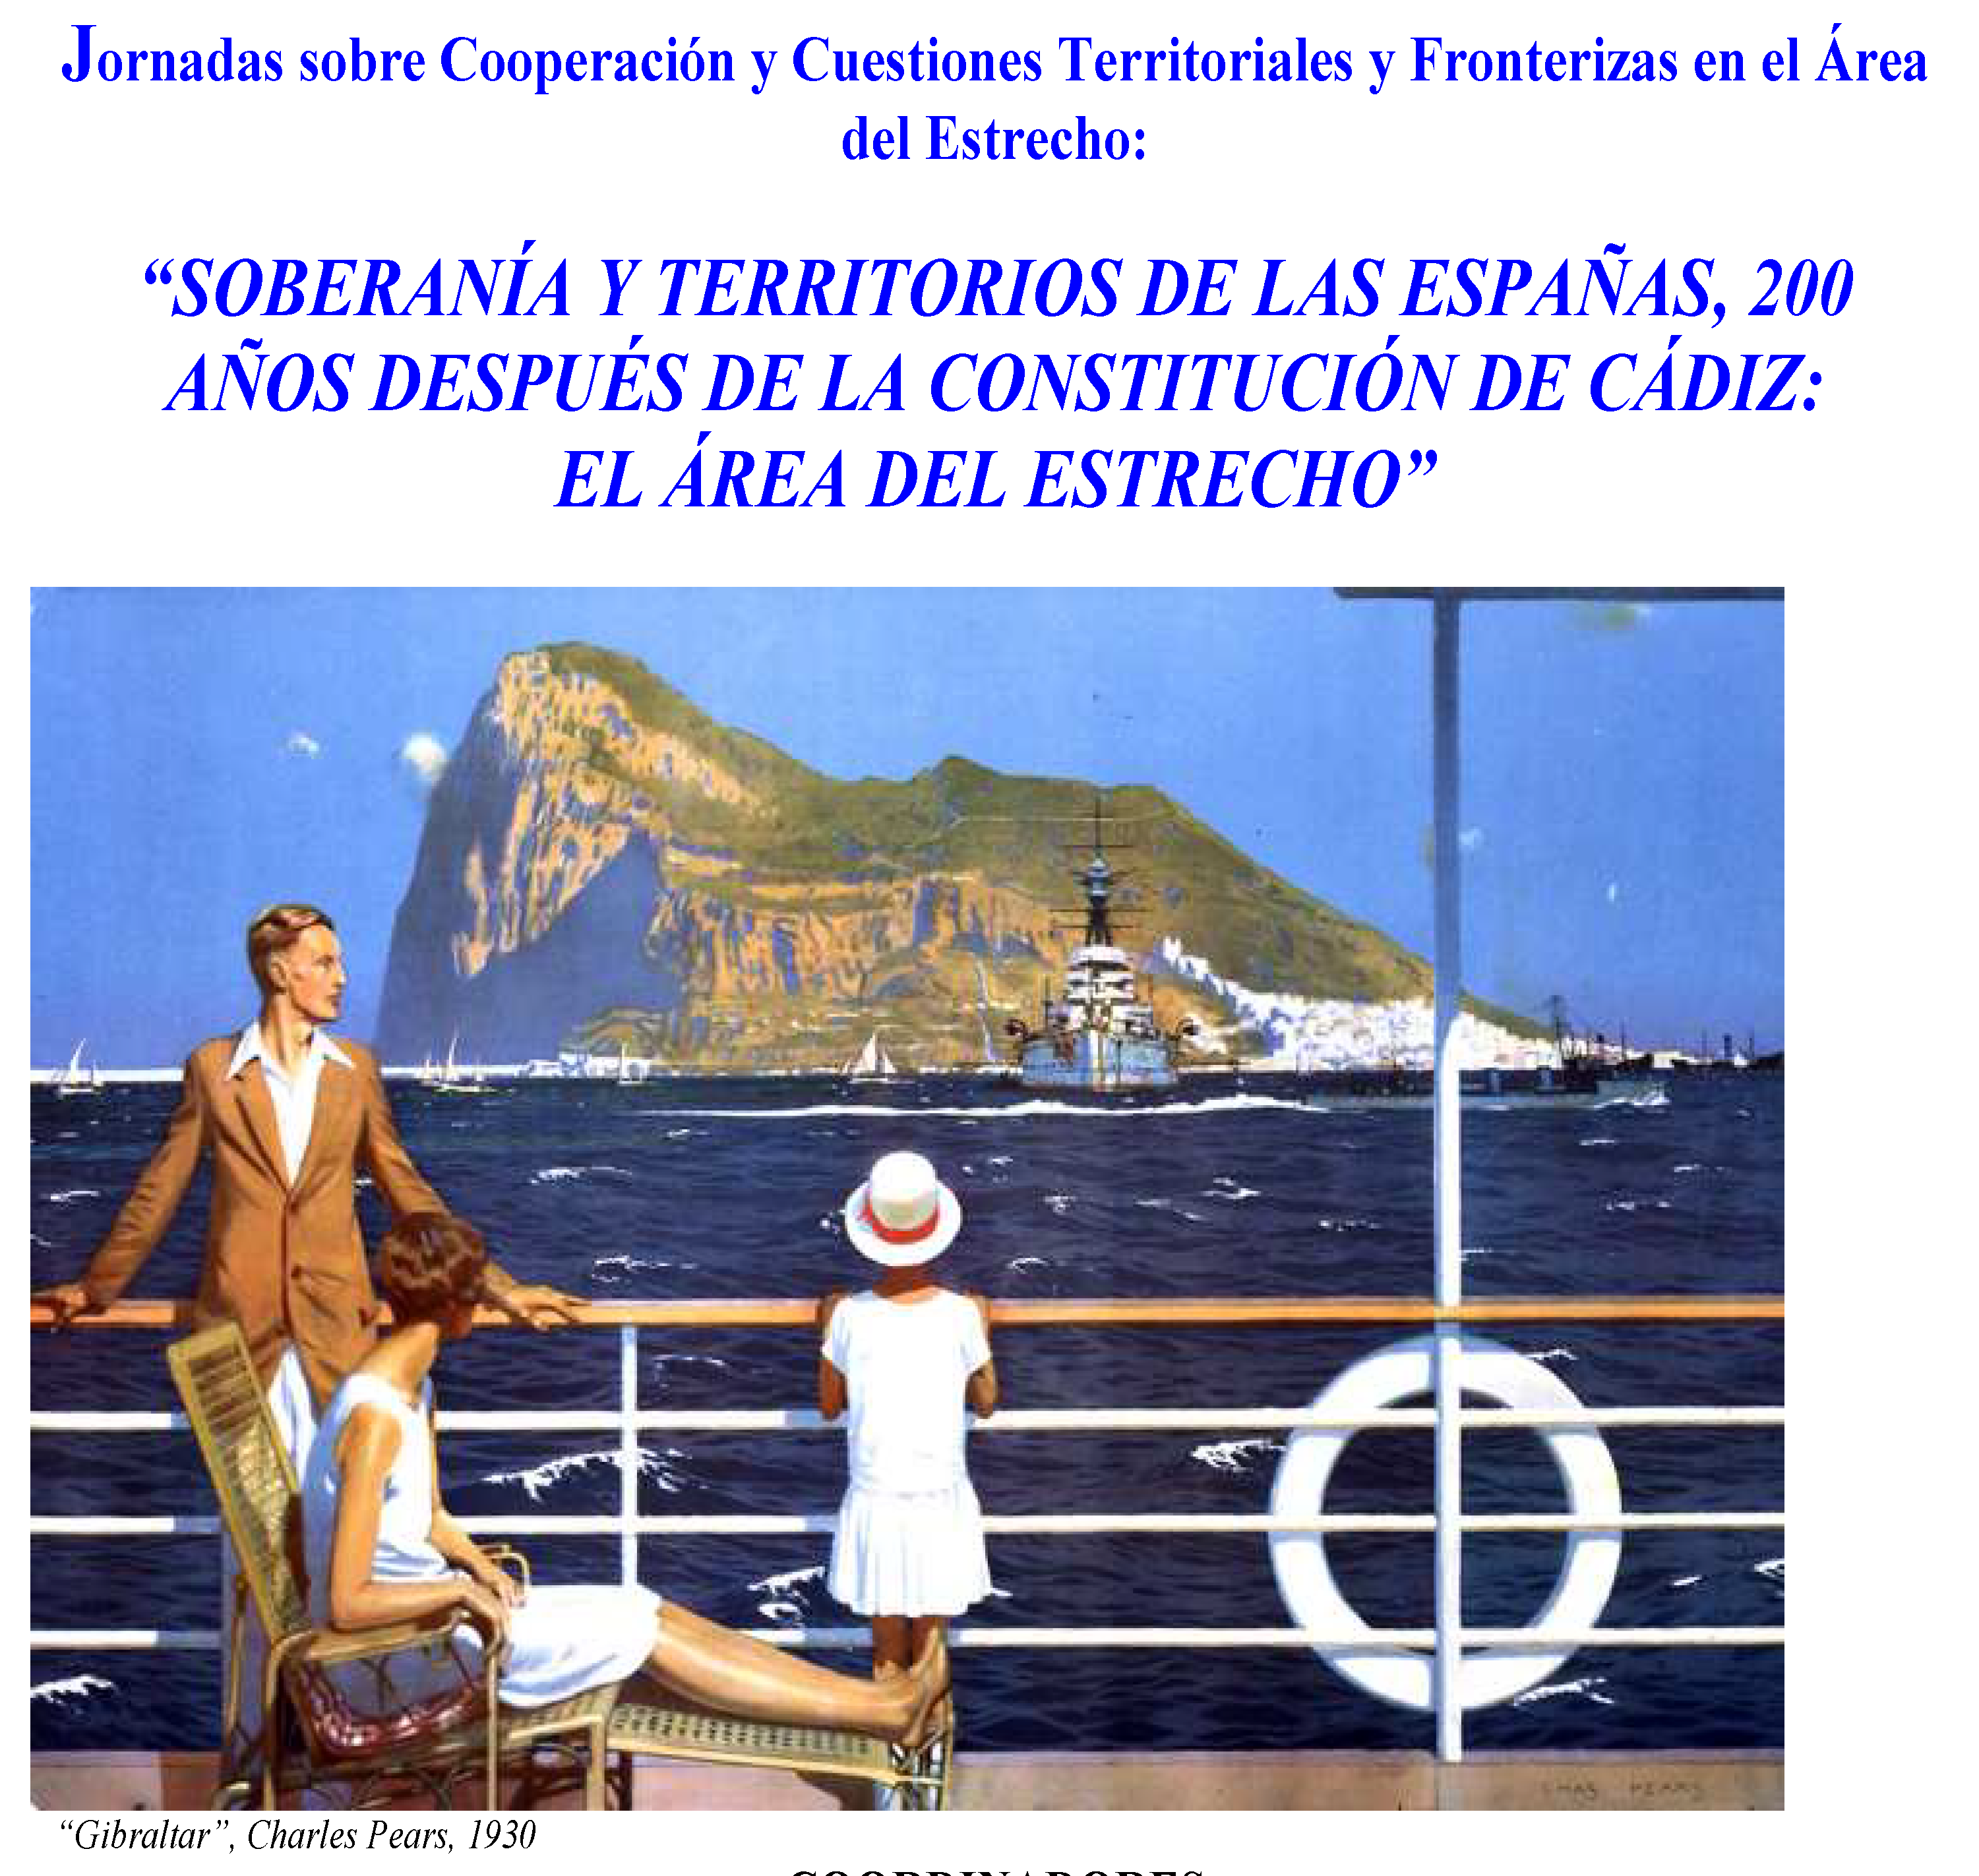 La Cátedra Jean Monnet «Inmigración y Fronteras» participa en la organización de unas Jornadas sobre soberanía y territorios de España en el área del Estrecho